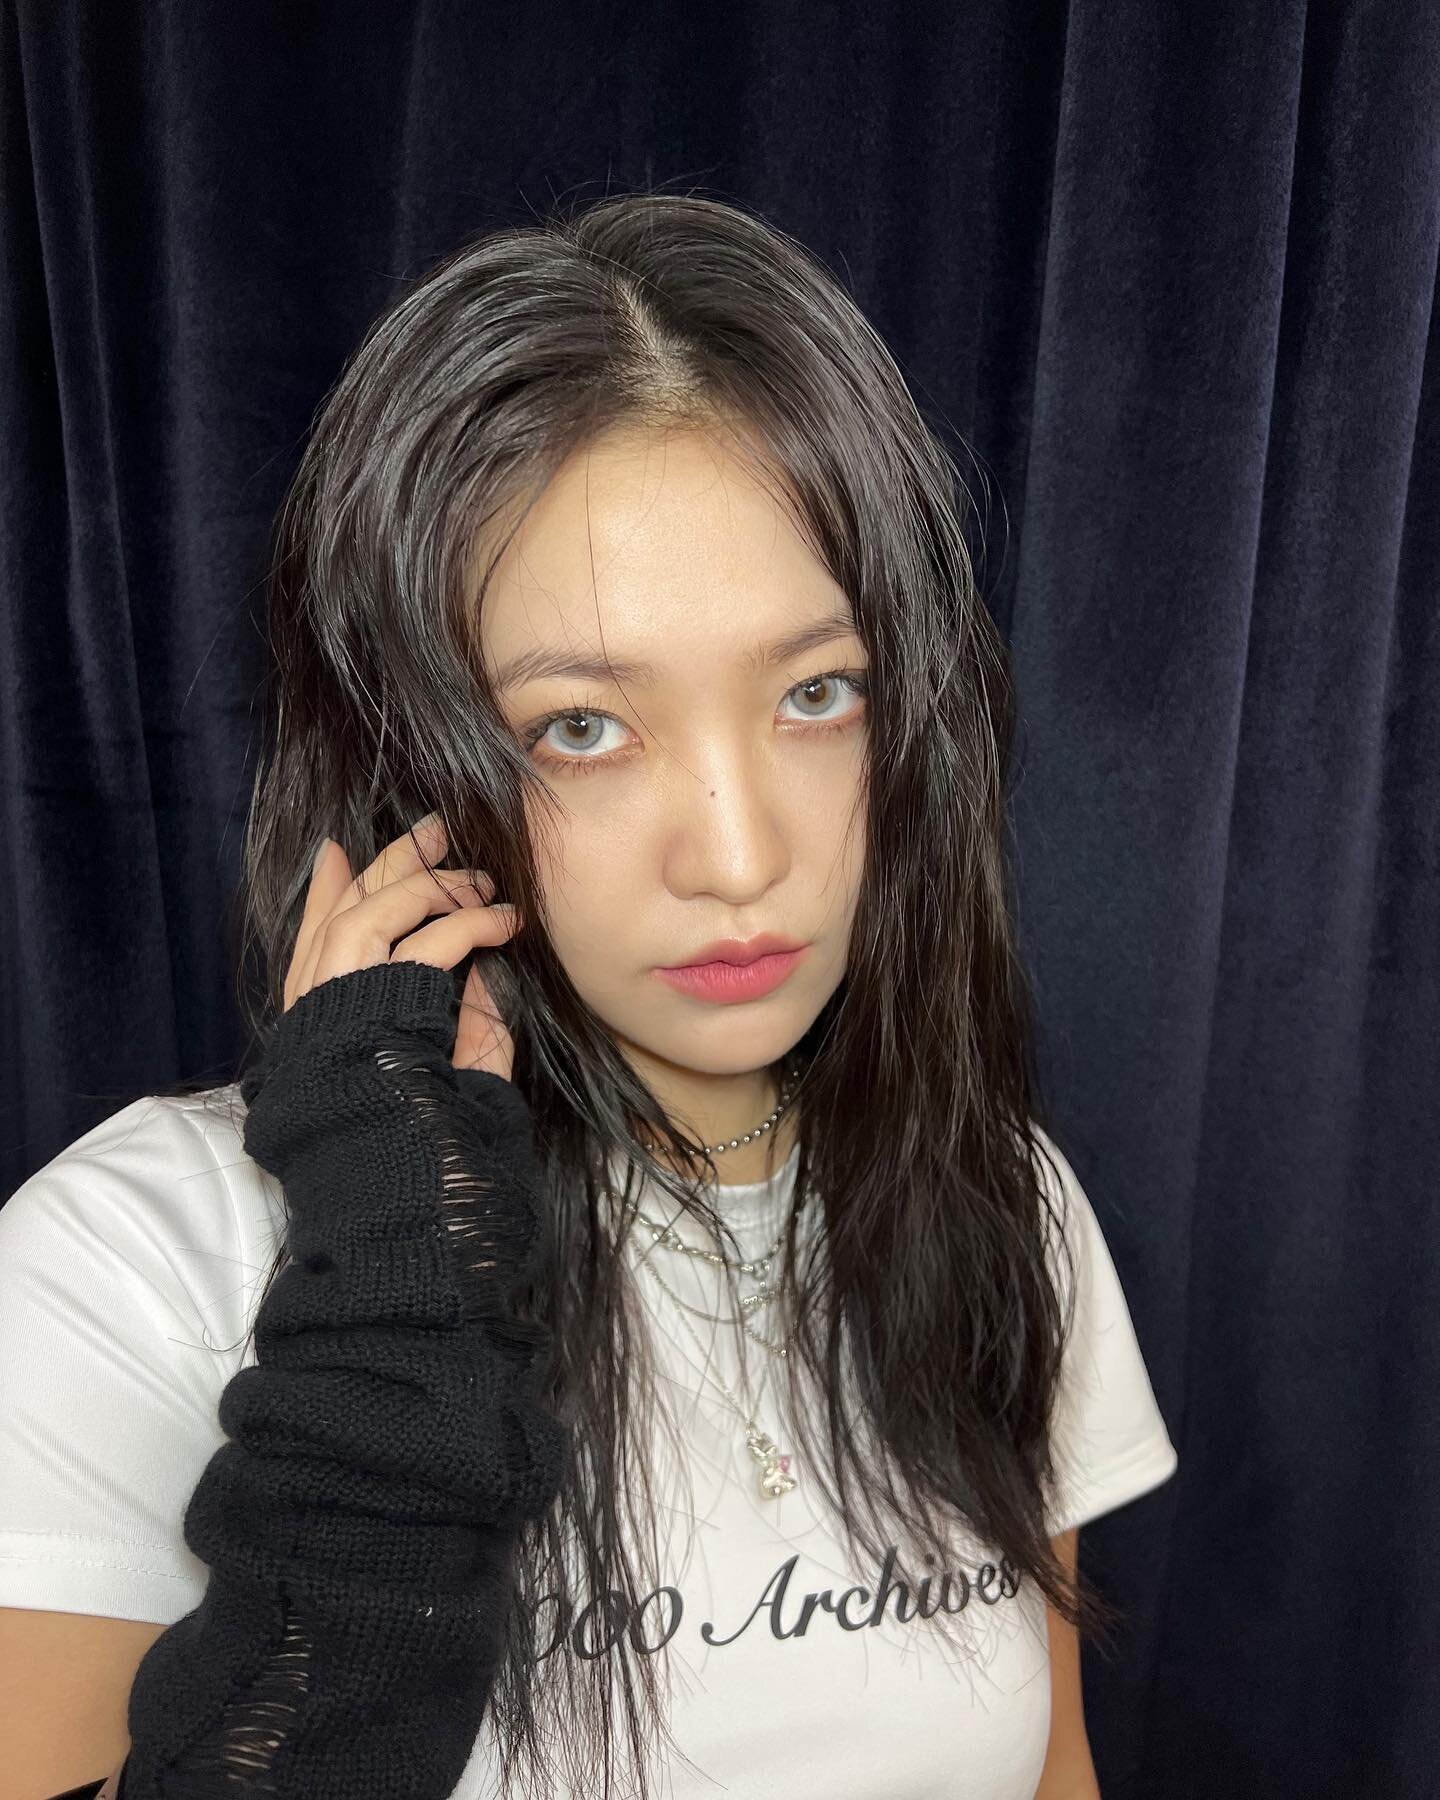 221211 Red Velvet Yeri Instagram Update | kpopping